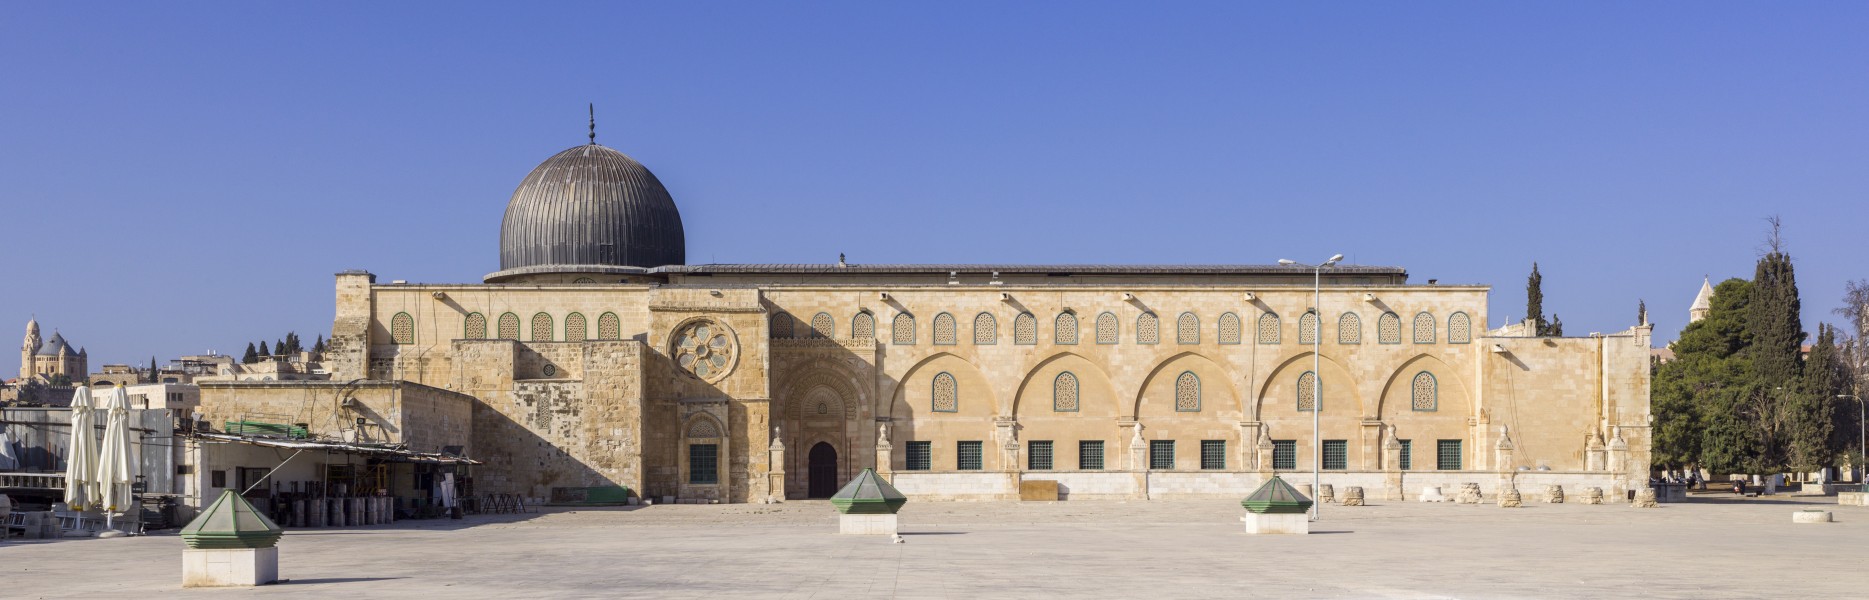 Israel-2013(2)-Jerusalem-Temple Mount-Al-Aqsa Mosque (east exposure)